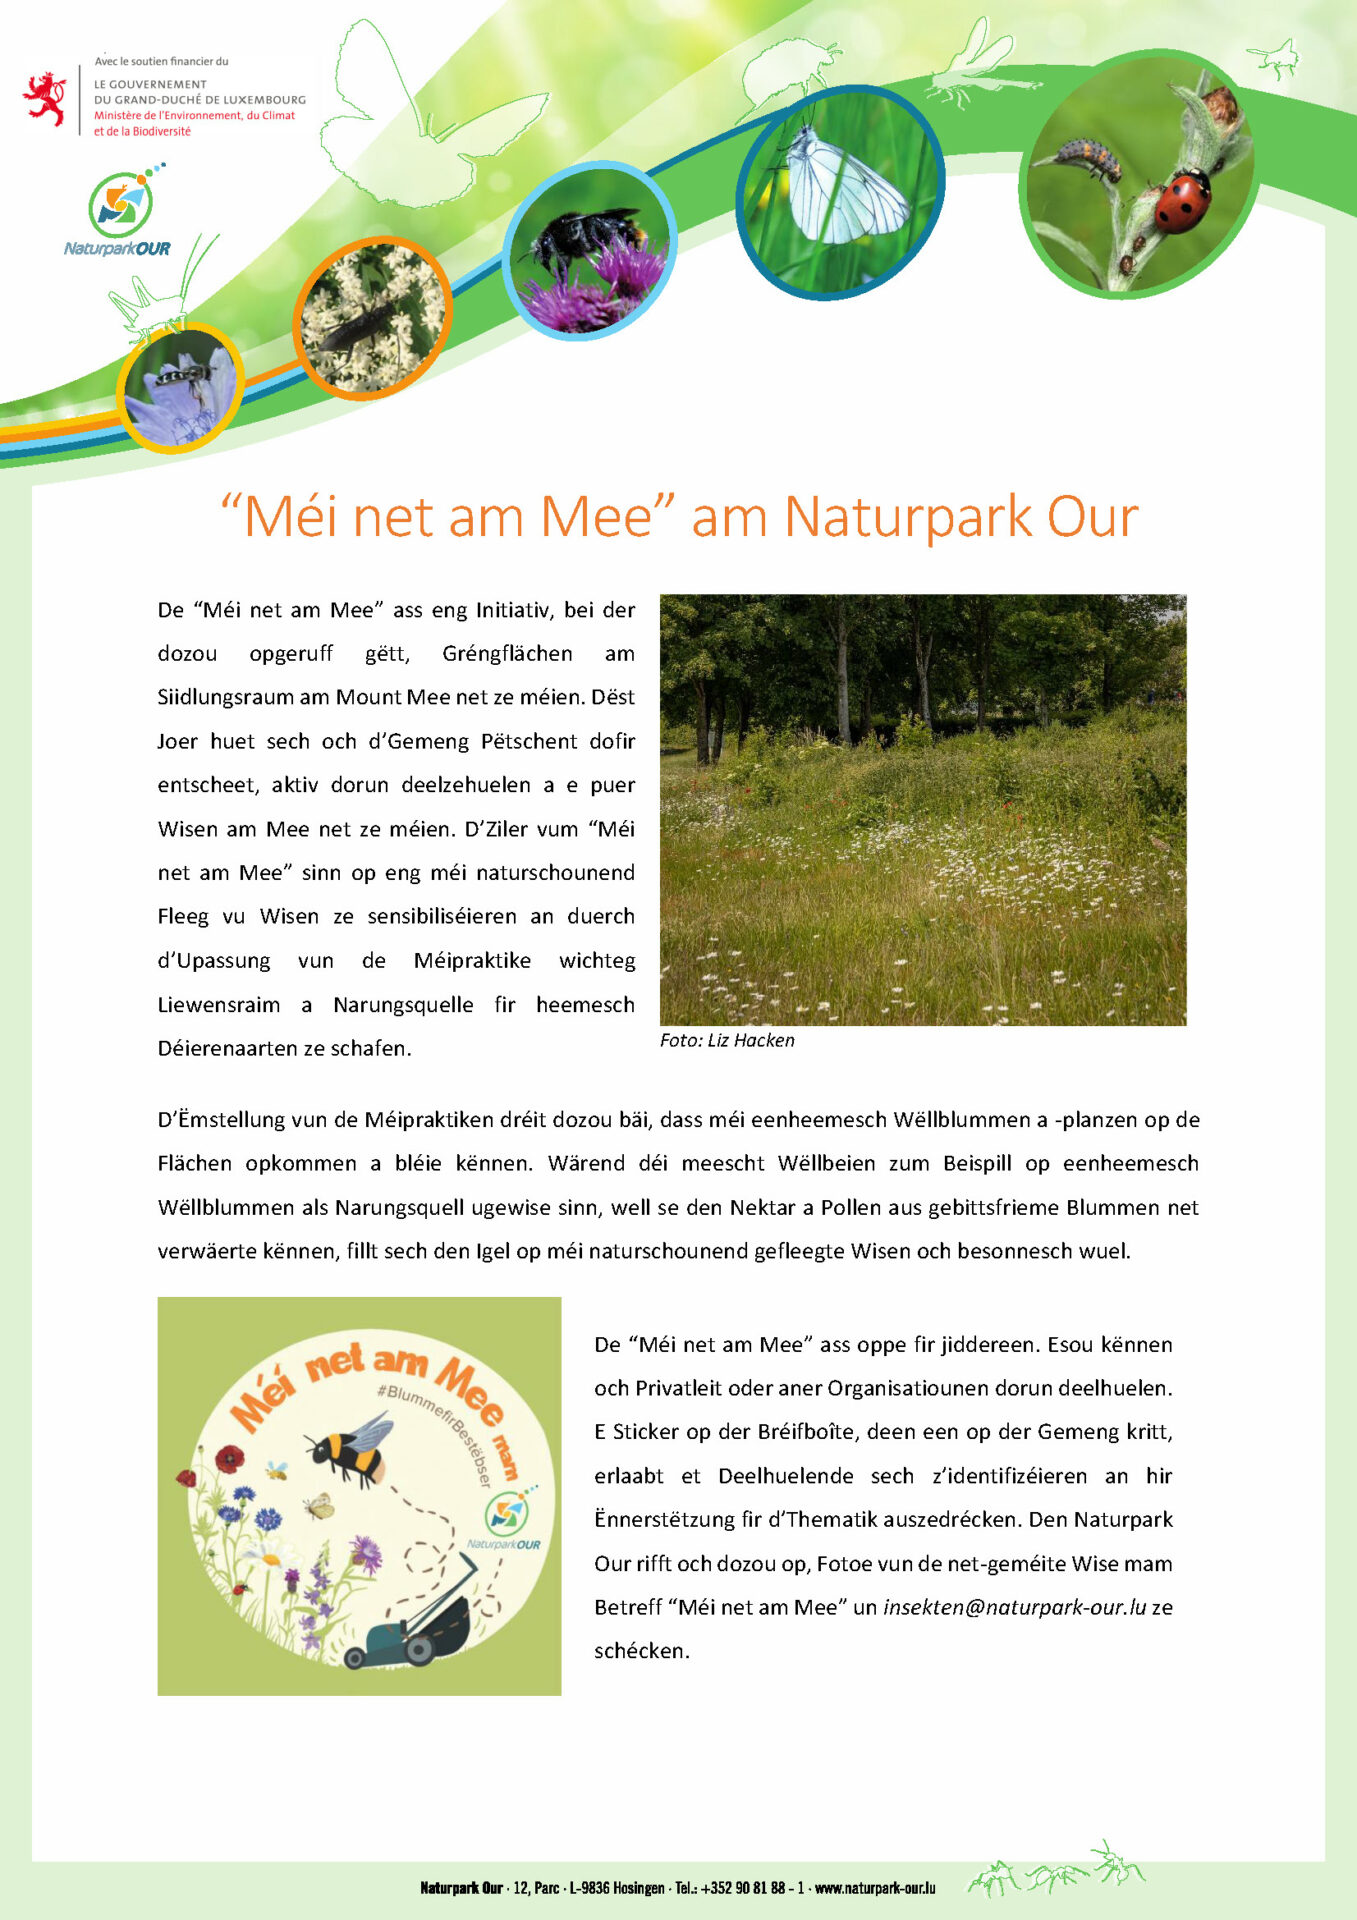 "Méi net am Mee" am Naturpark Our